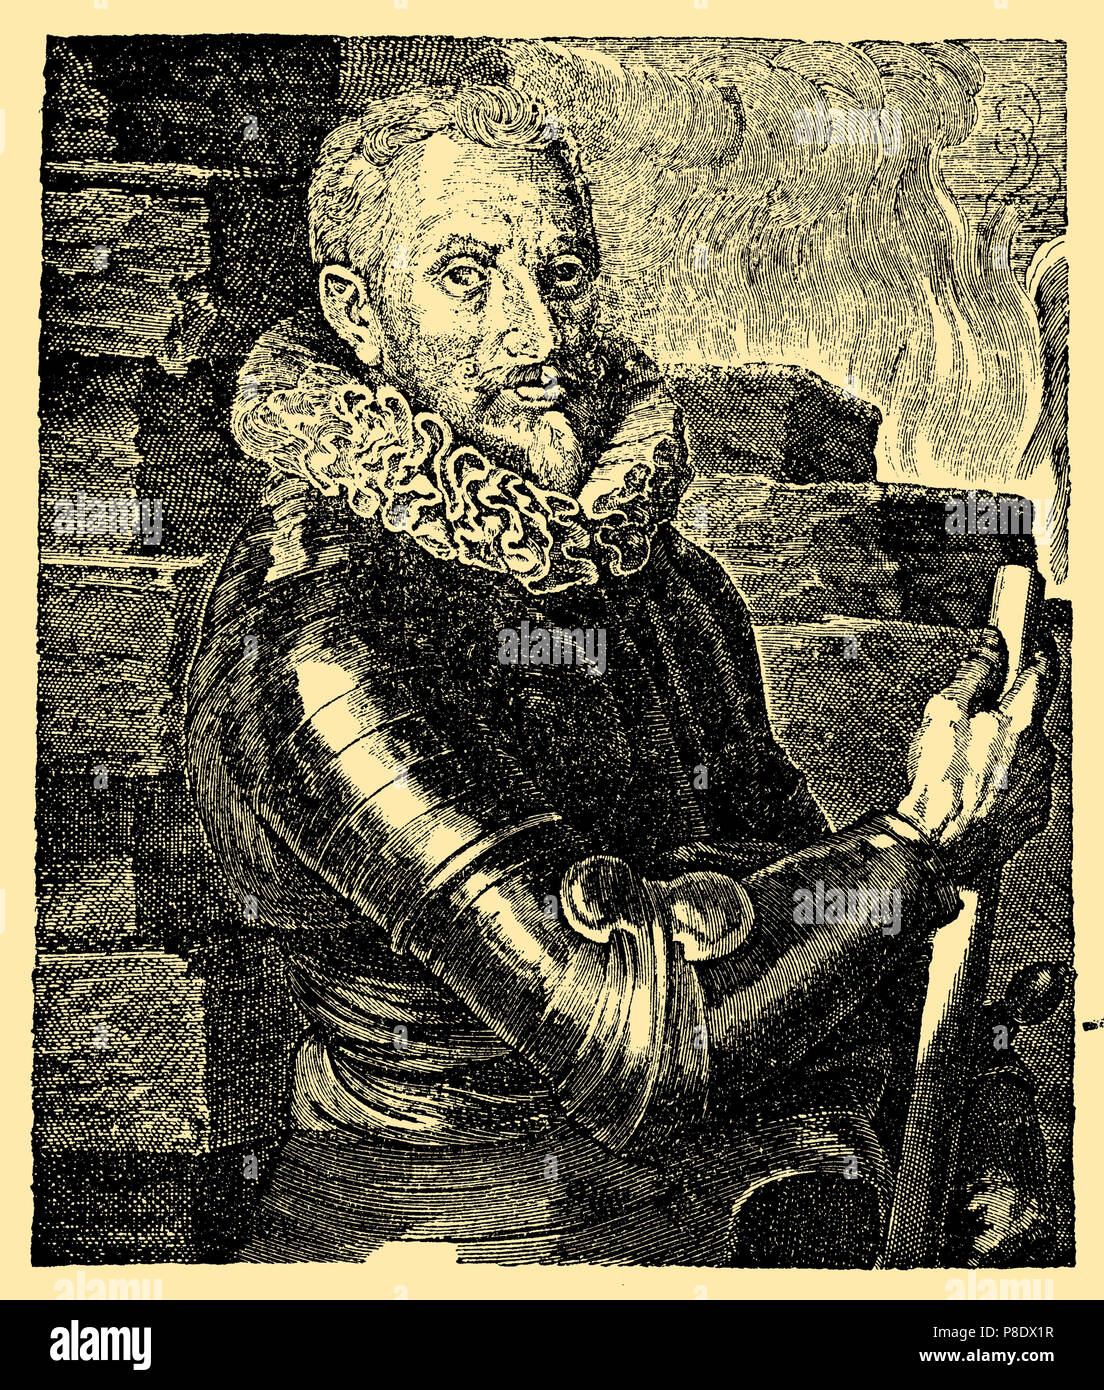 Johann T'Serclaes von Tilly, Graf Tilly (1559-1632), einer der obersten Befehlshaber des Dreißigjährigen Krieges, sowohl der katholischen Liga und von 1630 die kaiserliche Armee. Nach einem Gemälde von van Dyck, van Dyck 1881 Stockfoto